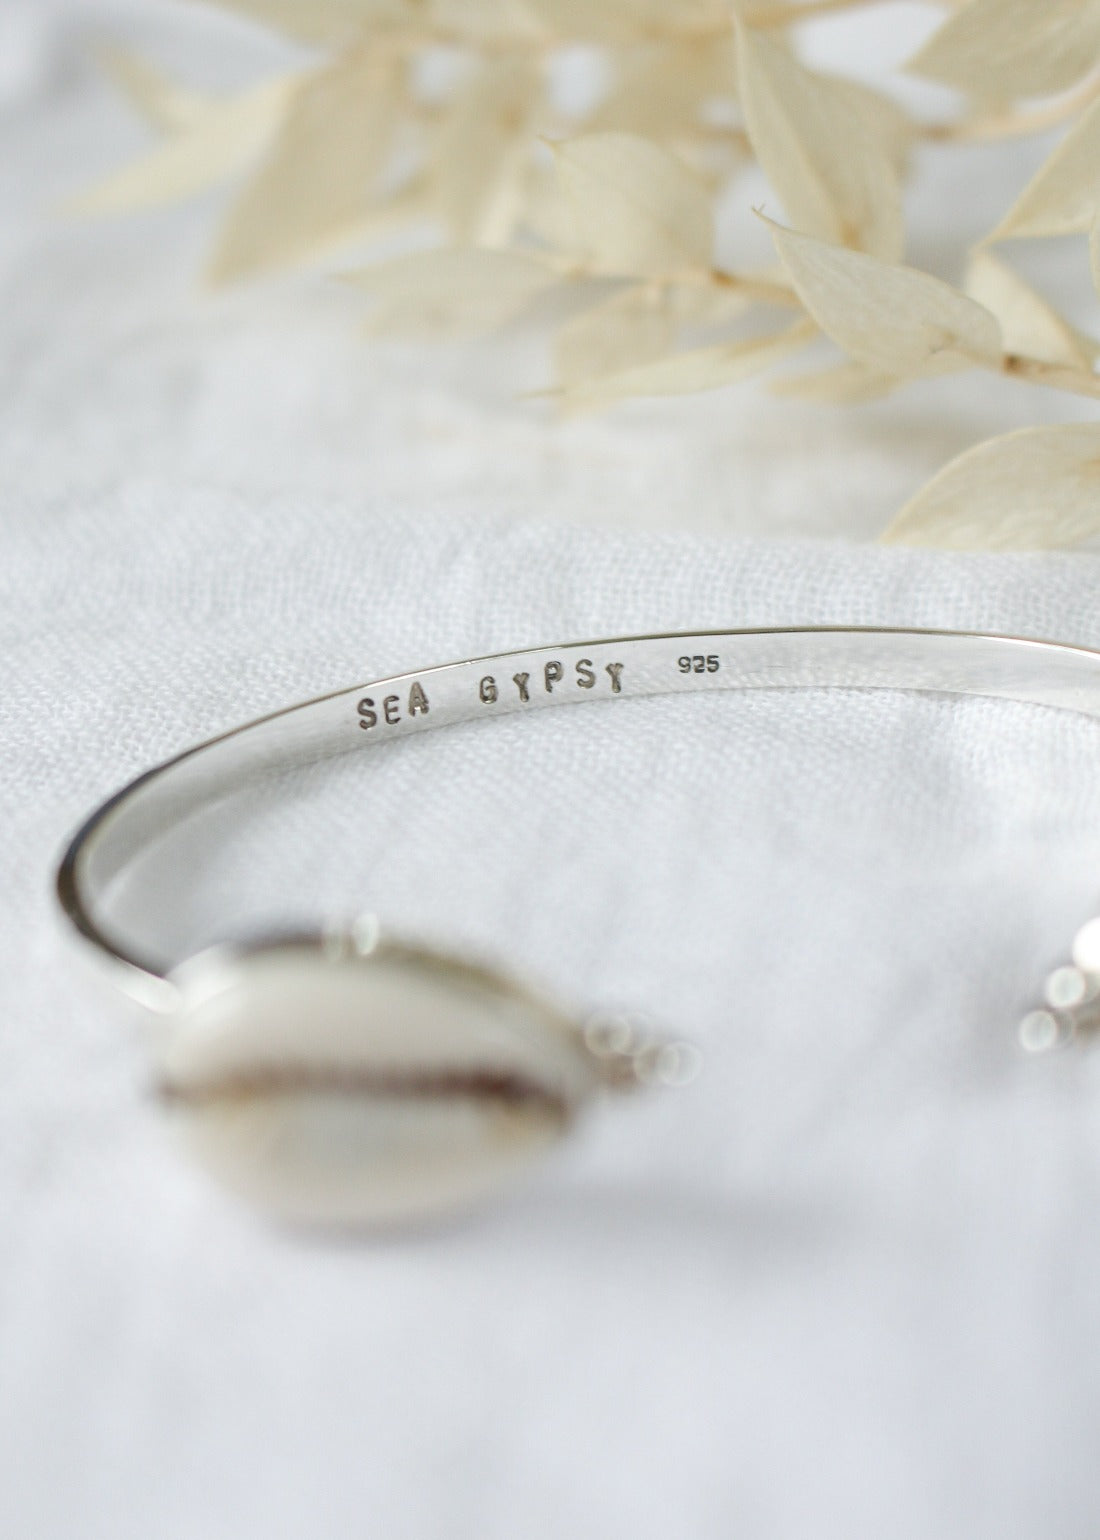 Sea Gypsy Cowrie Shell Sterling Silver Bracelet